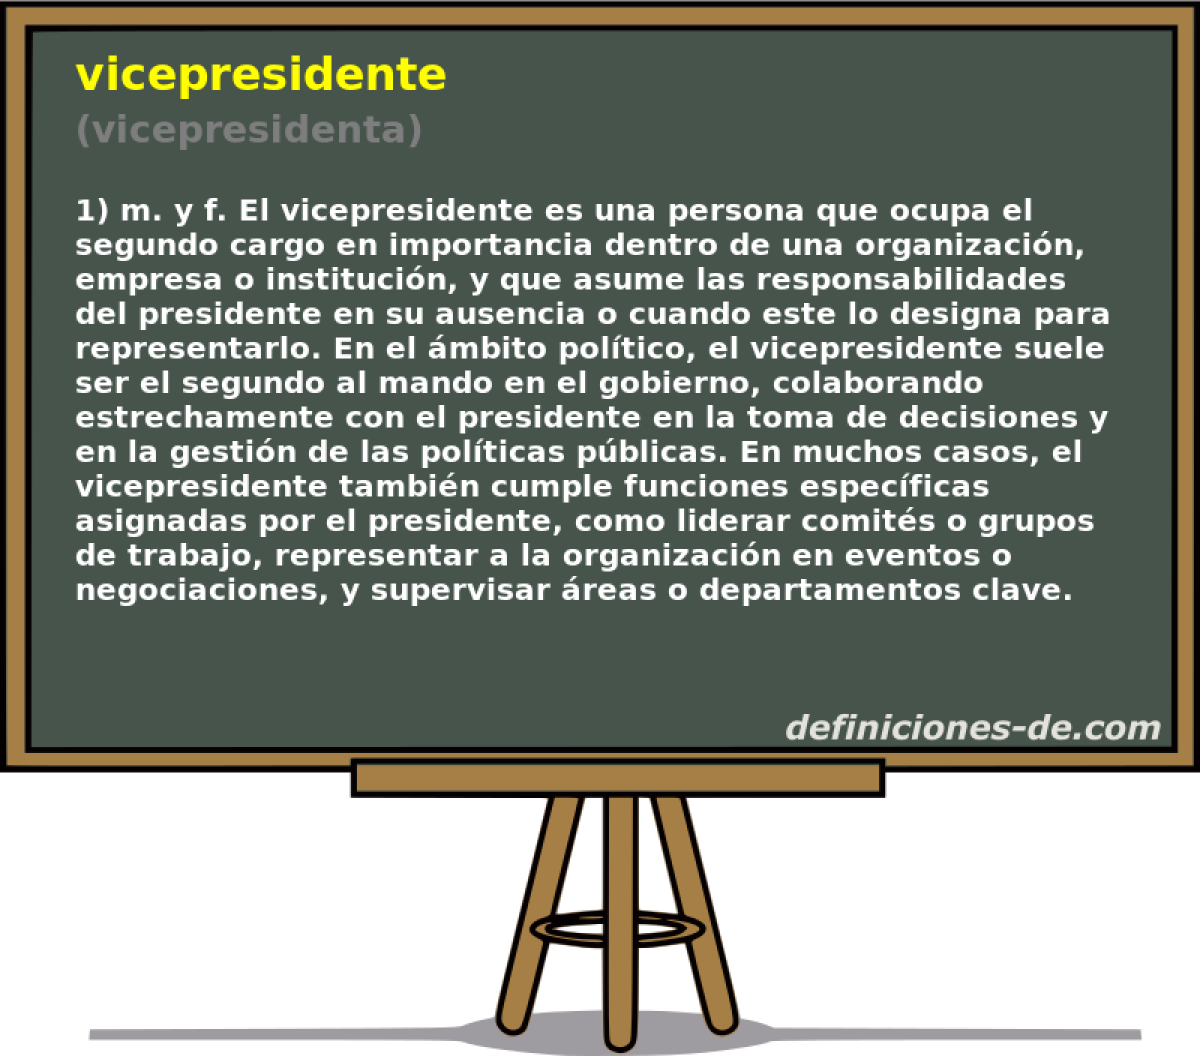 vicepresidente (vicepresidenta)